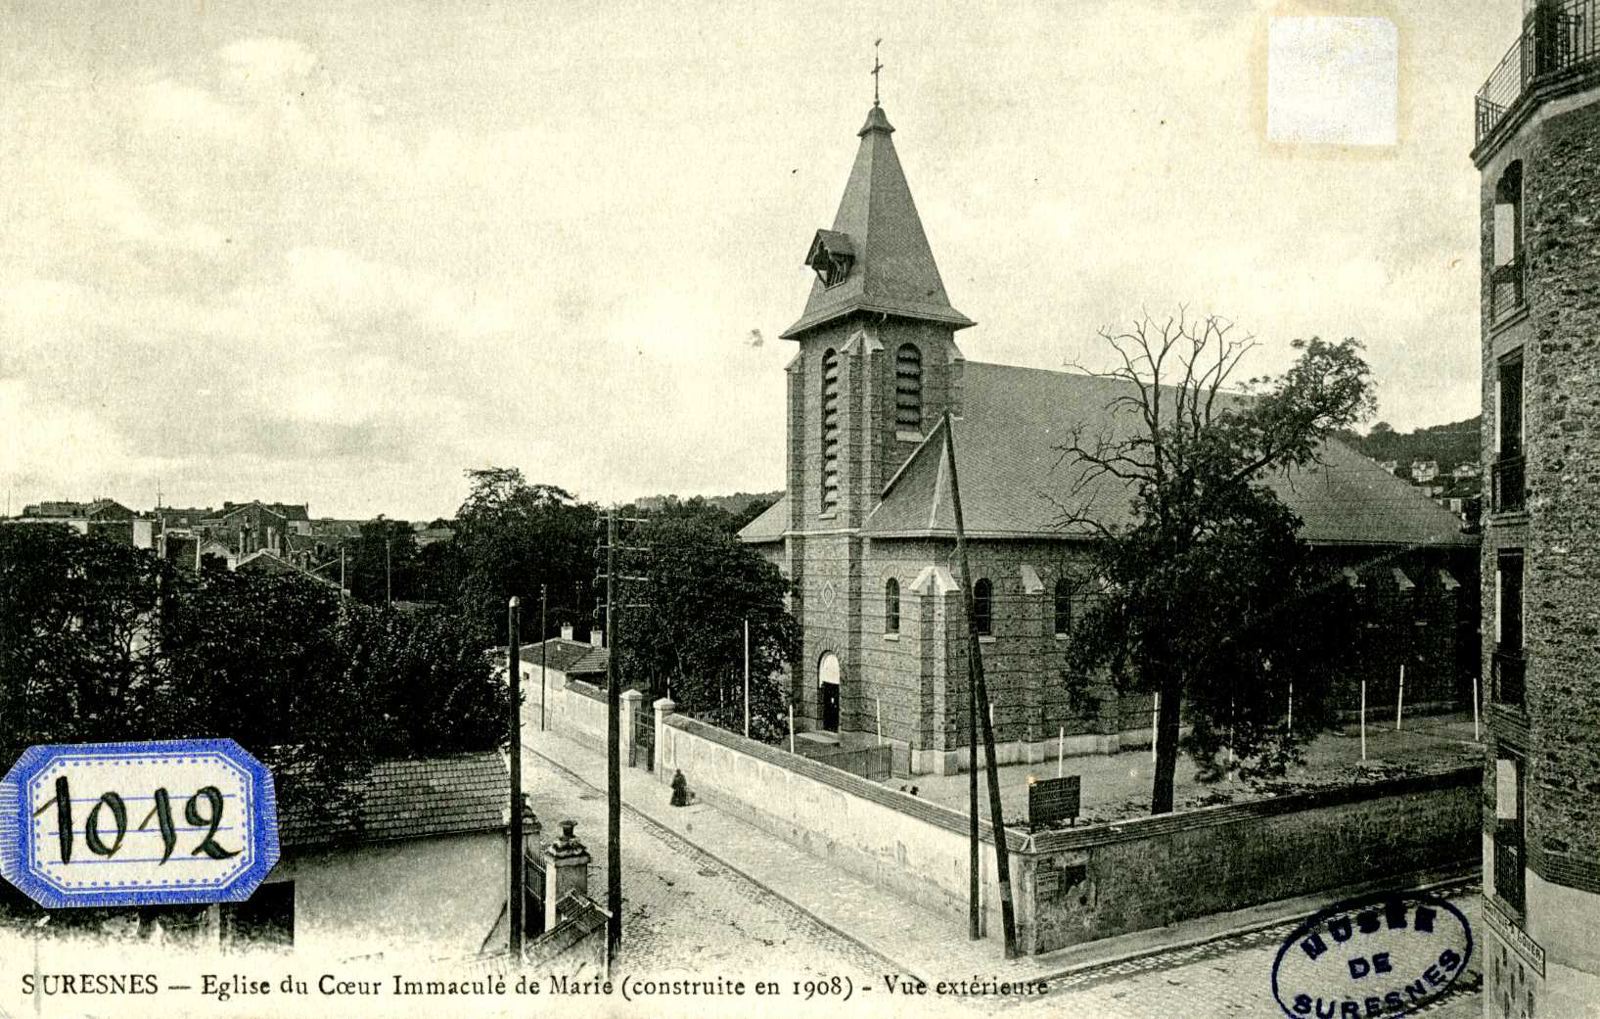 Suresnes, Eglise du Coeur immaculé de Marie (construite en 1908). Vue extérieure